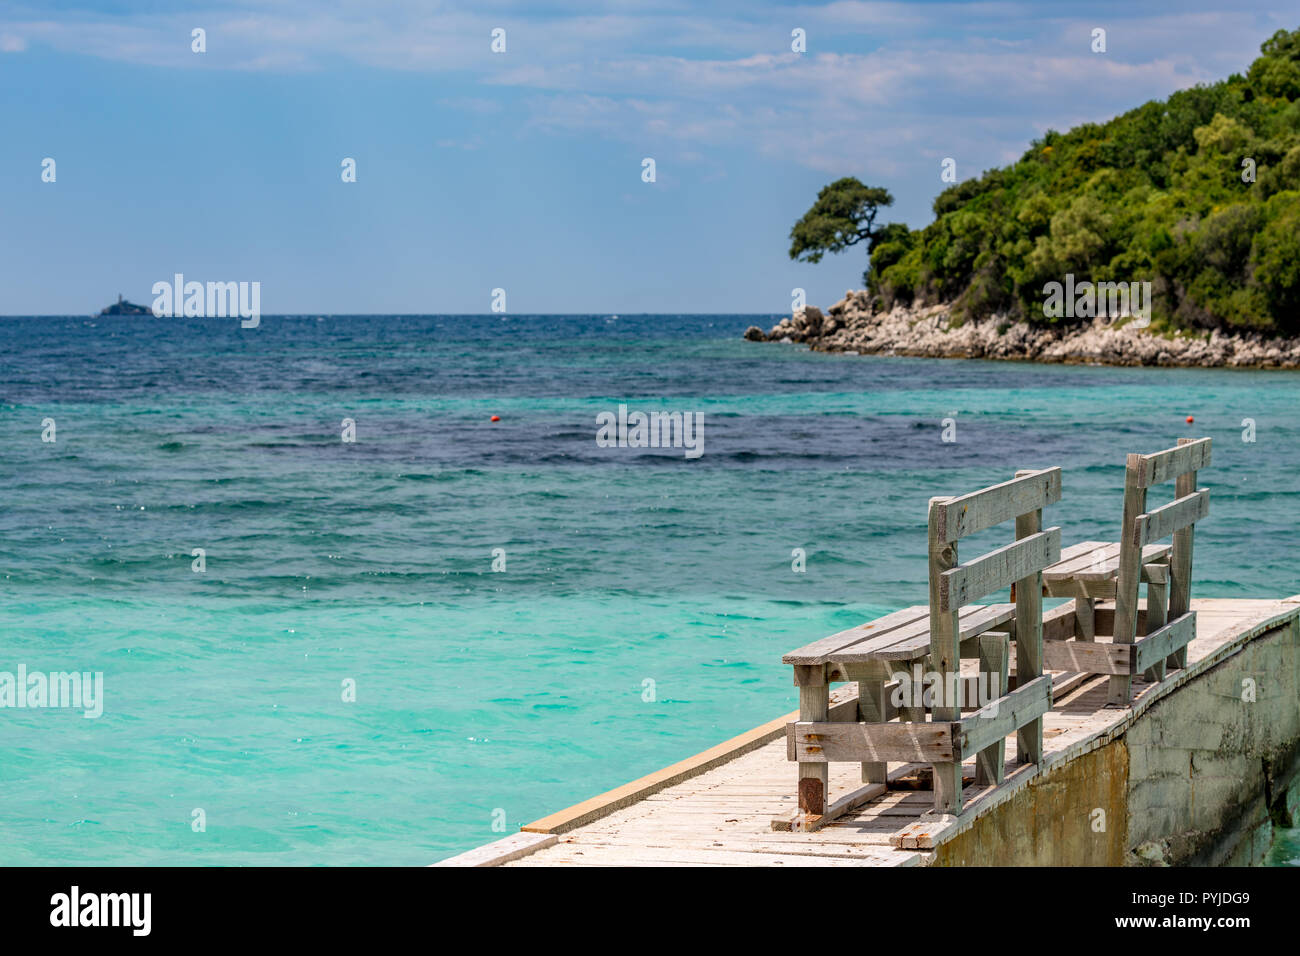 Feder tagsüber schönen Ionischen Meer mit klarem, türkisfarbenem Wasser, Holz- pier und feinen Sand der Küste Blick von Ksamil Strand, Albanien. Tief blauen Himmel mit weißen Wolken. Stockfoto